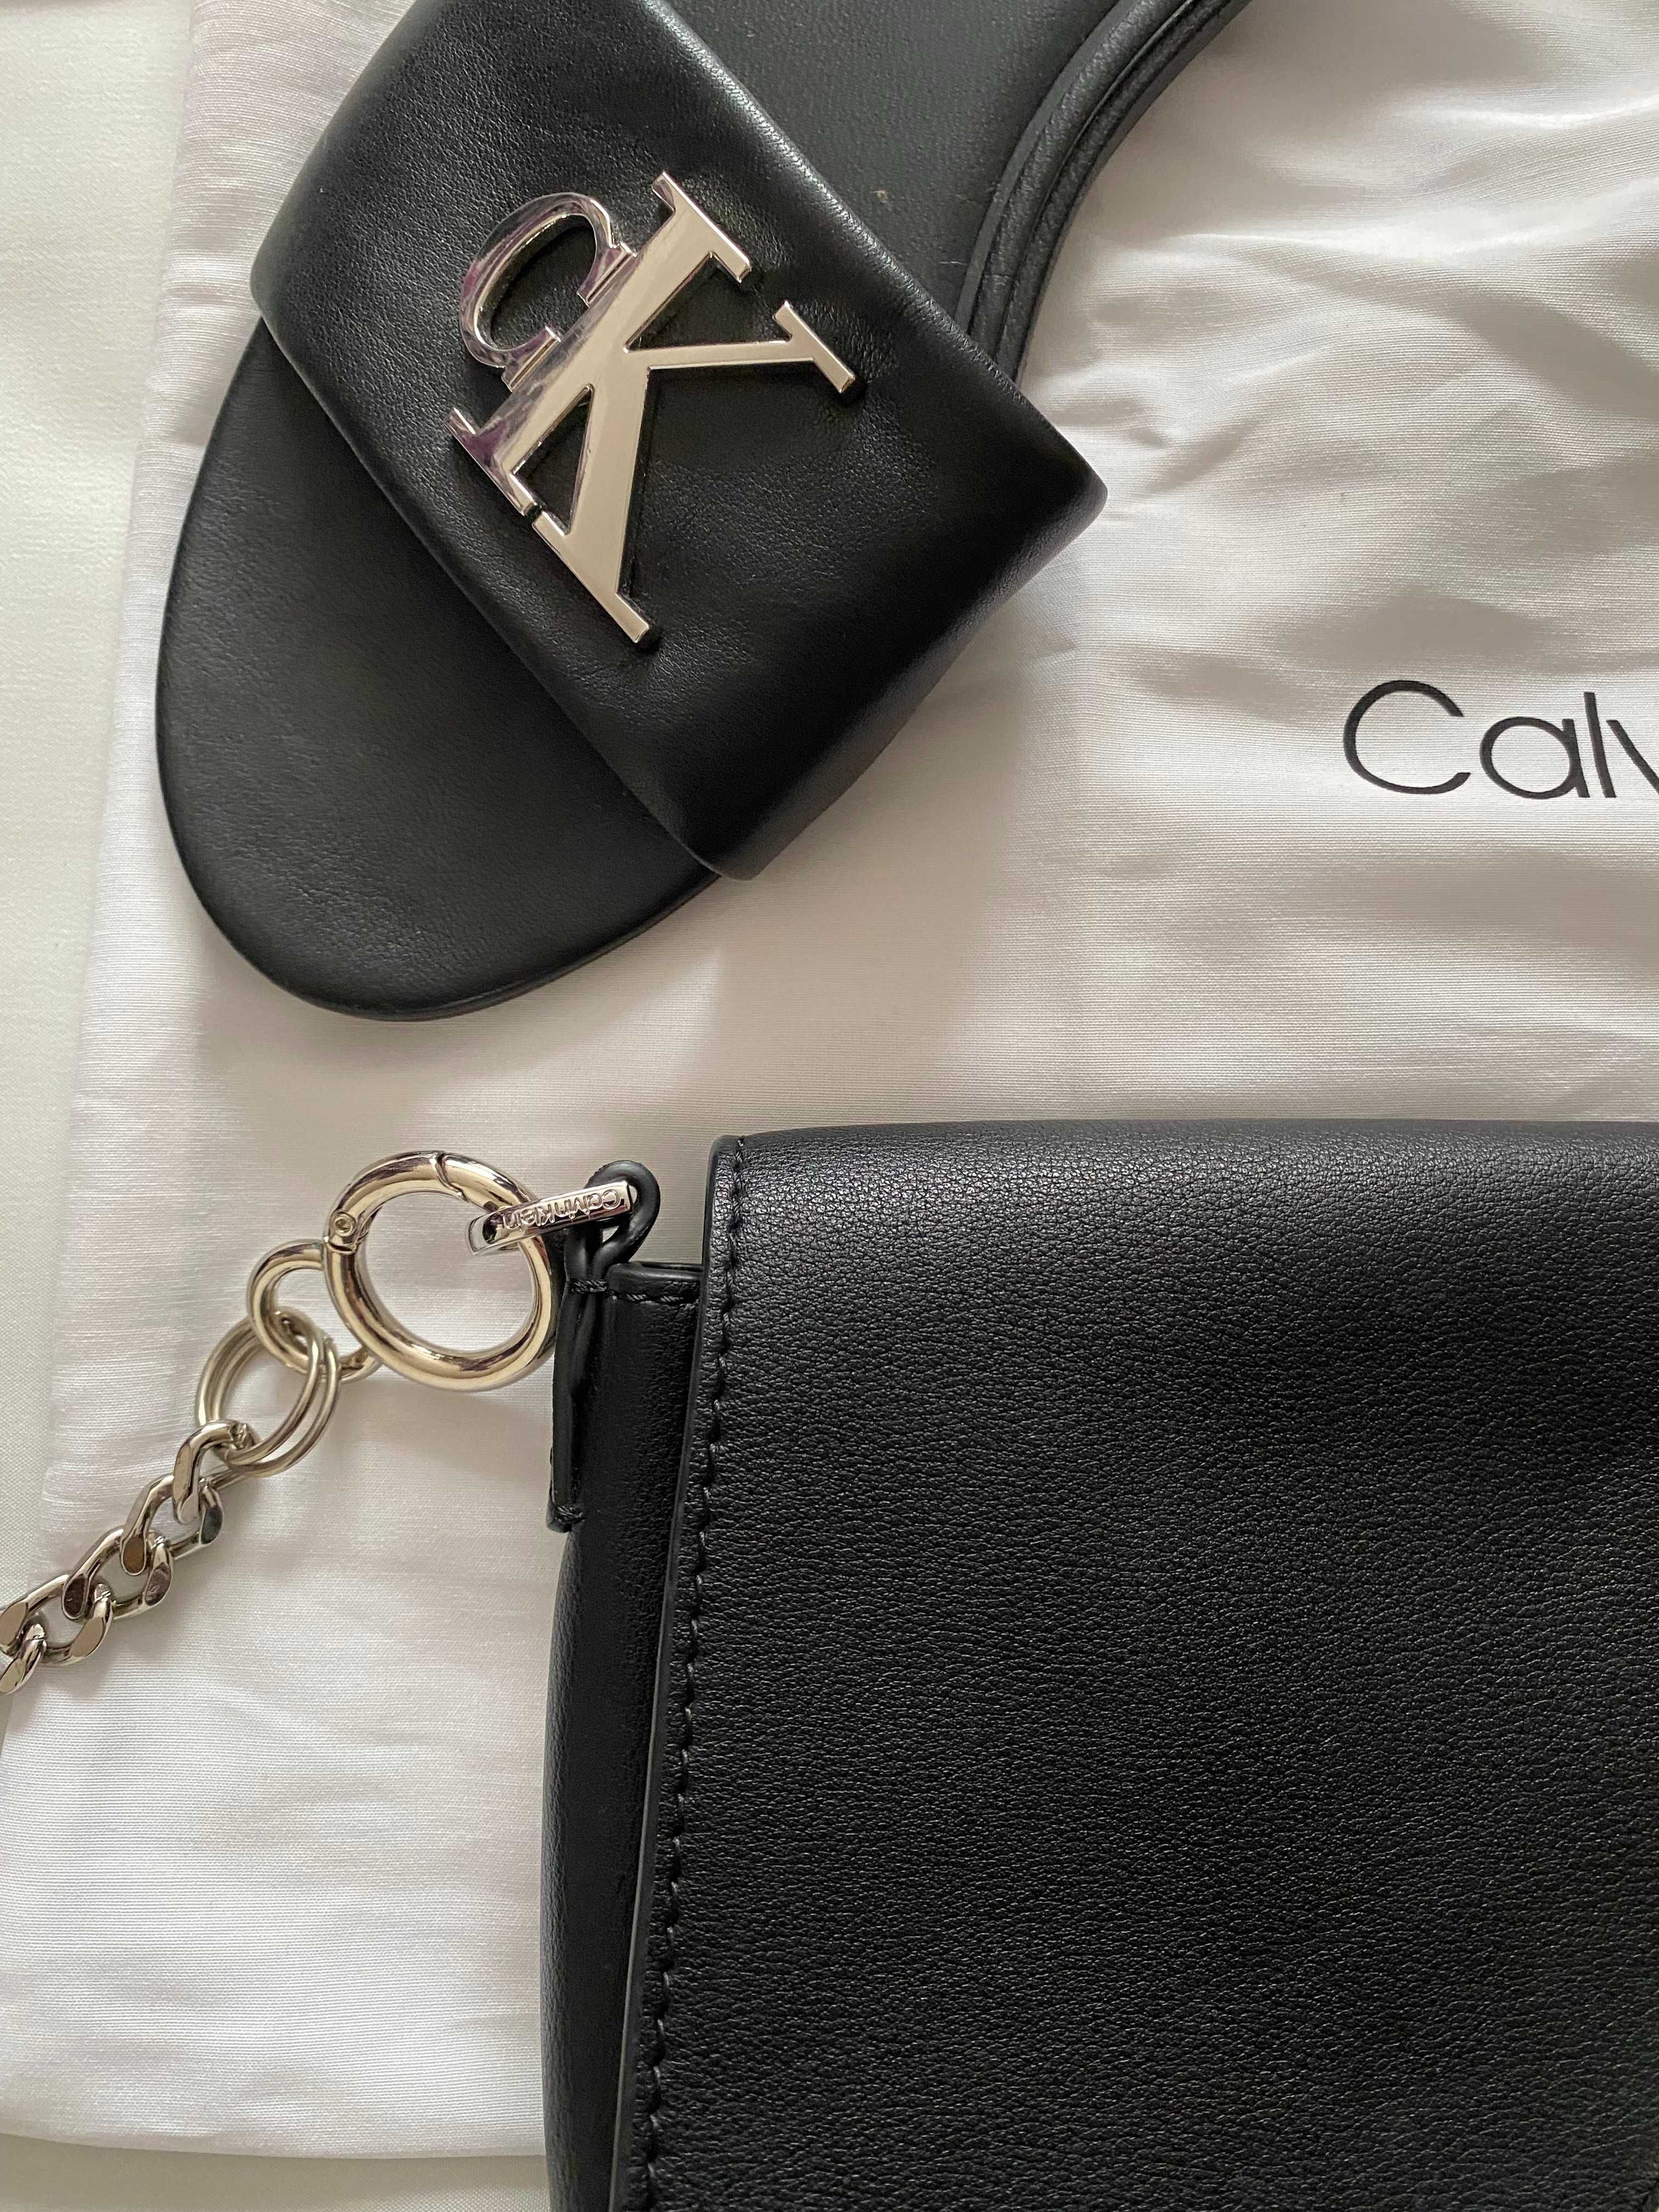 Papuci dama, Calvin Klein, geanta asortata, piele naturala, marimea 39